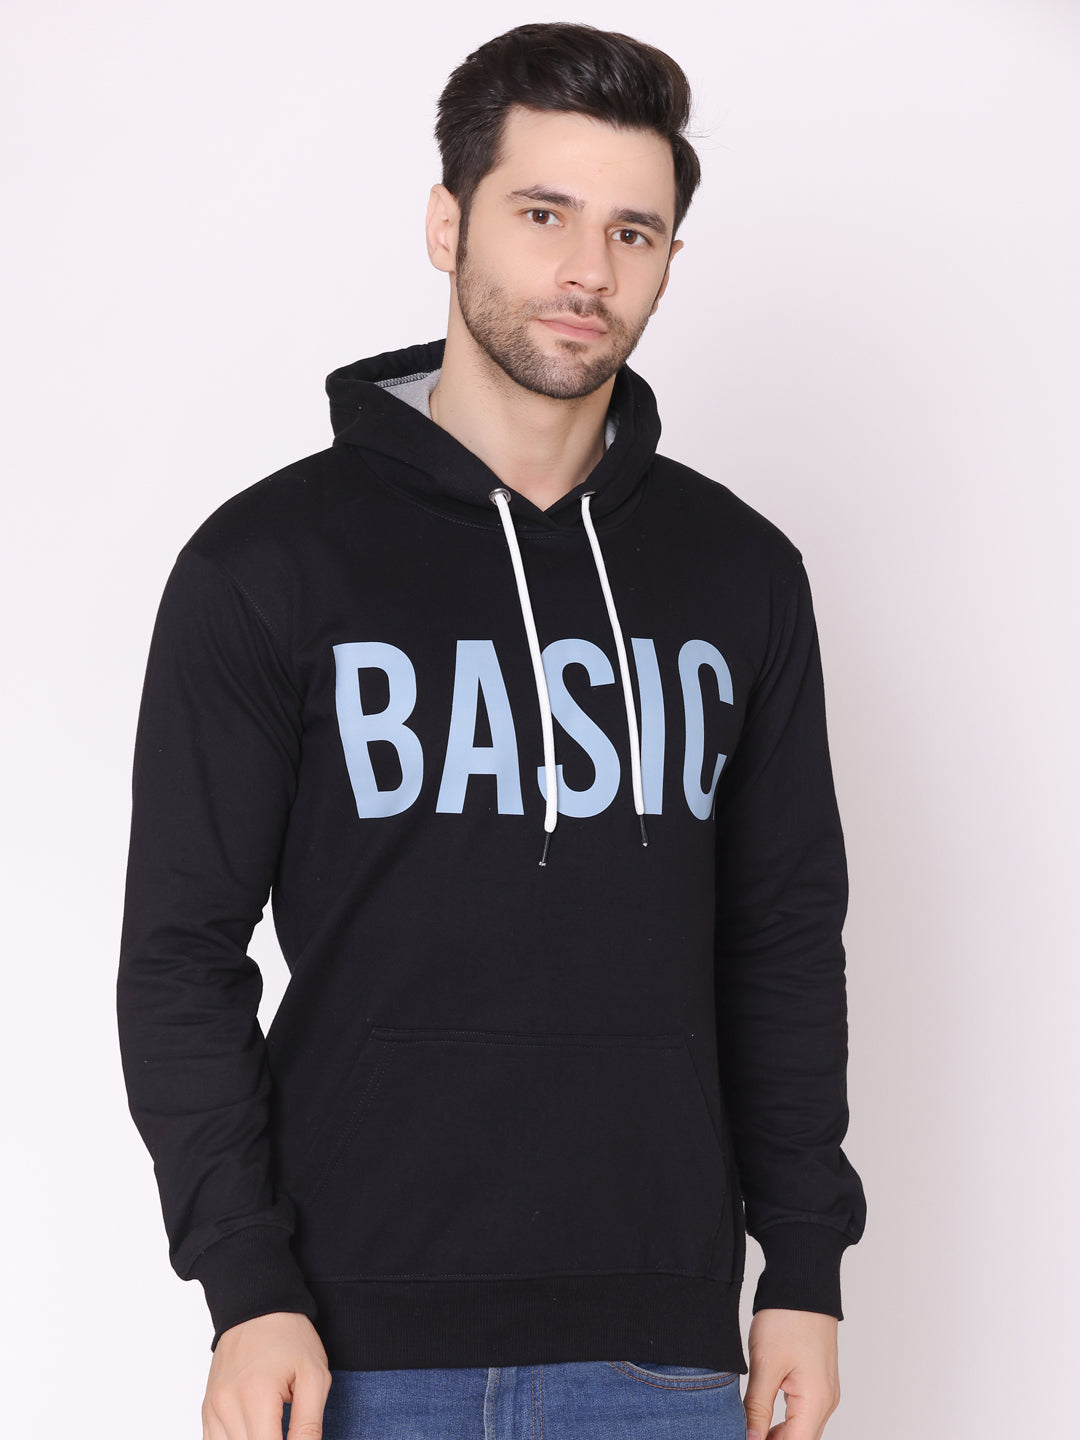 Men's Basic Printed Black Fleece Hoodie